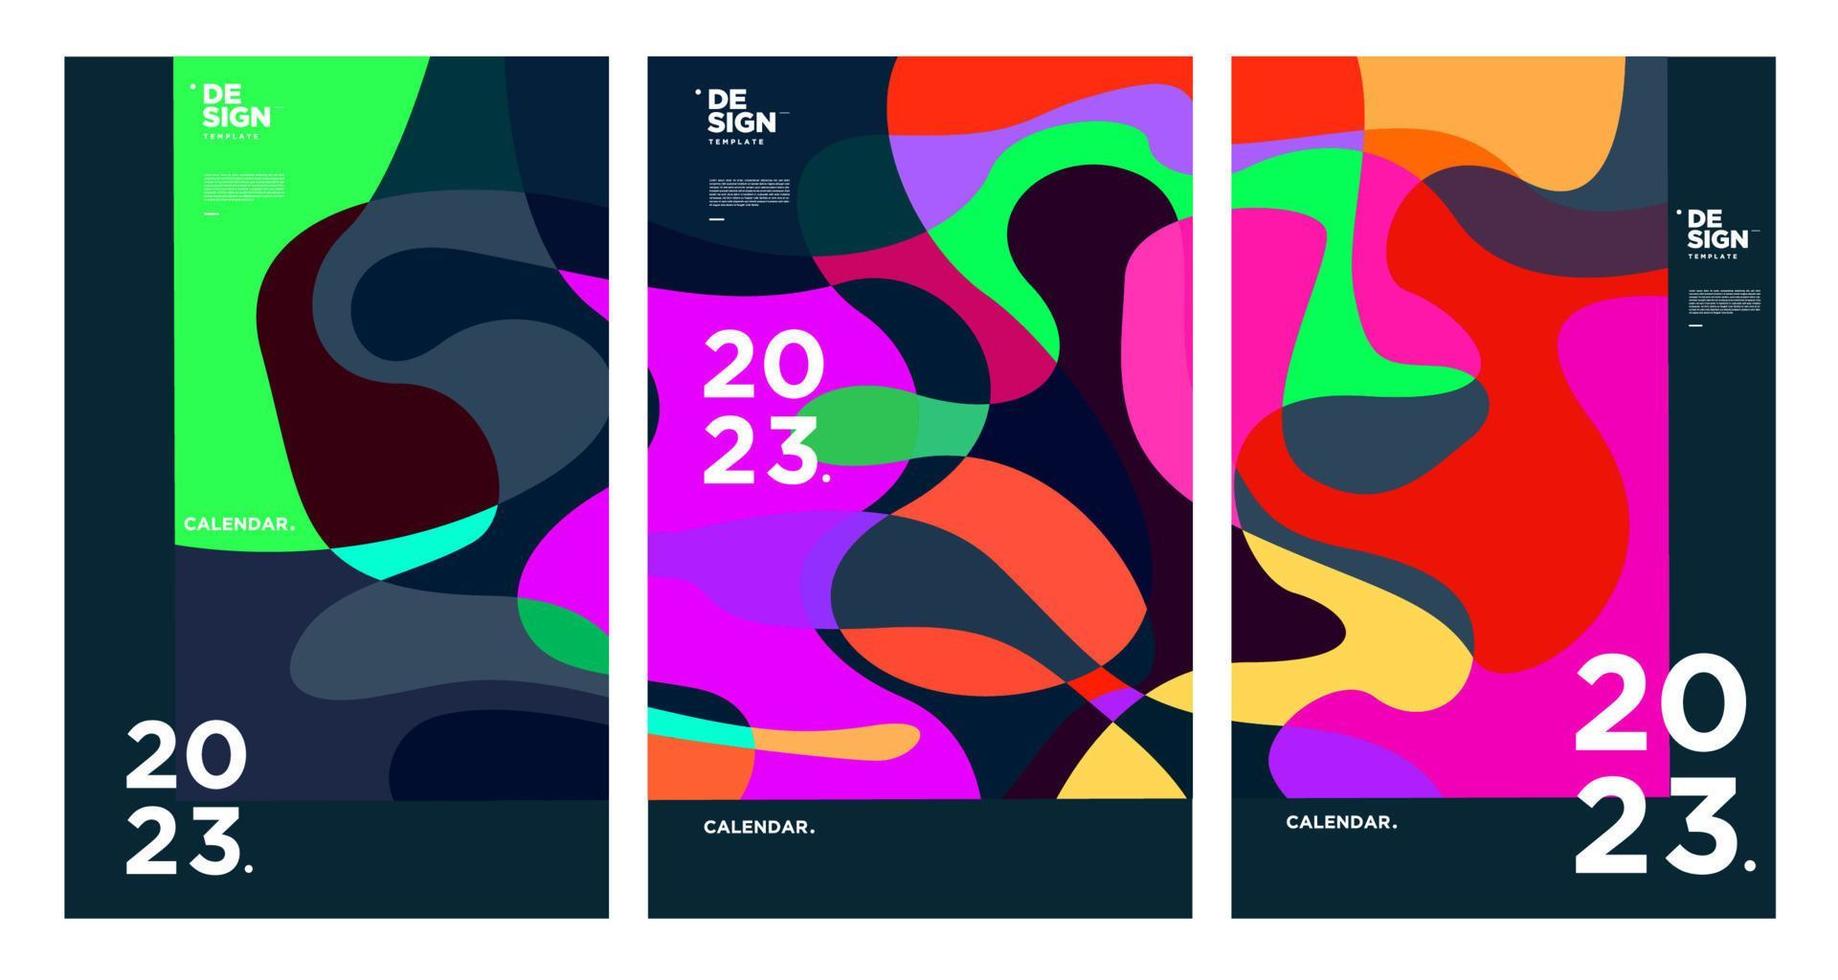 ny år 2023 kalender design mall med geometrisk färgrik abstrakt. vektor kalender design.